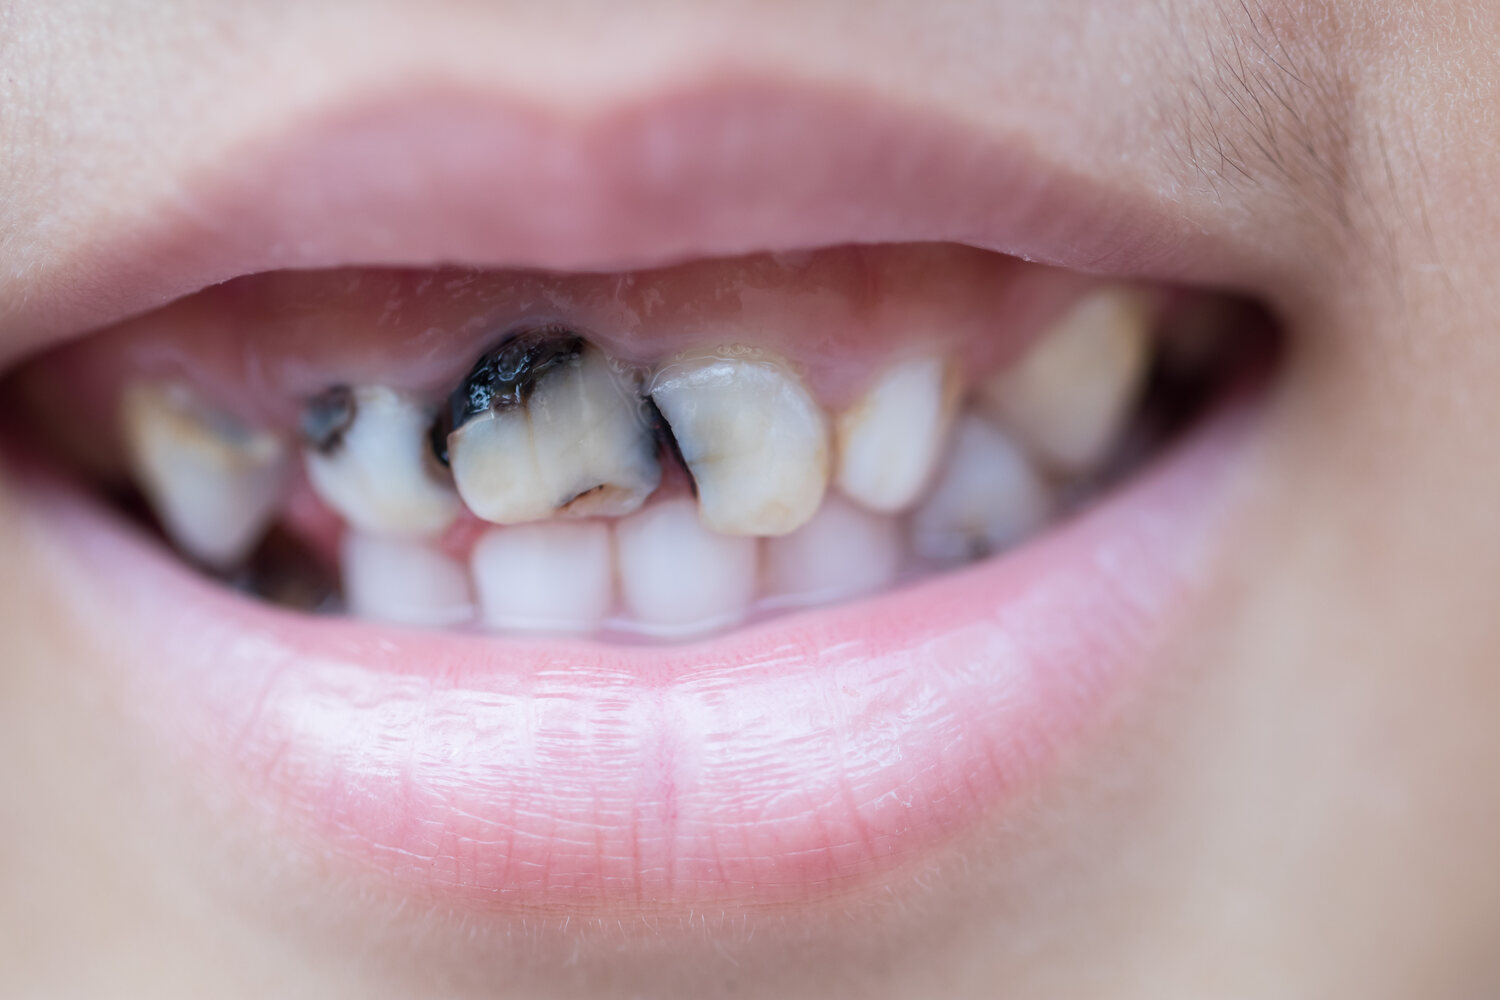 Teeth with cavities